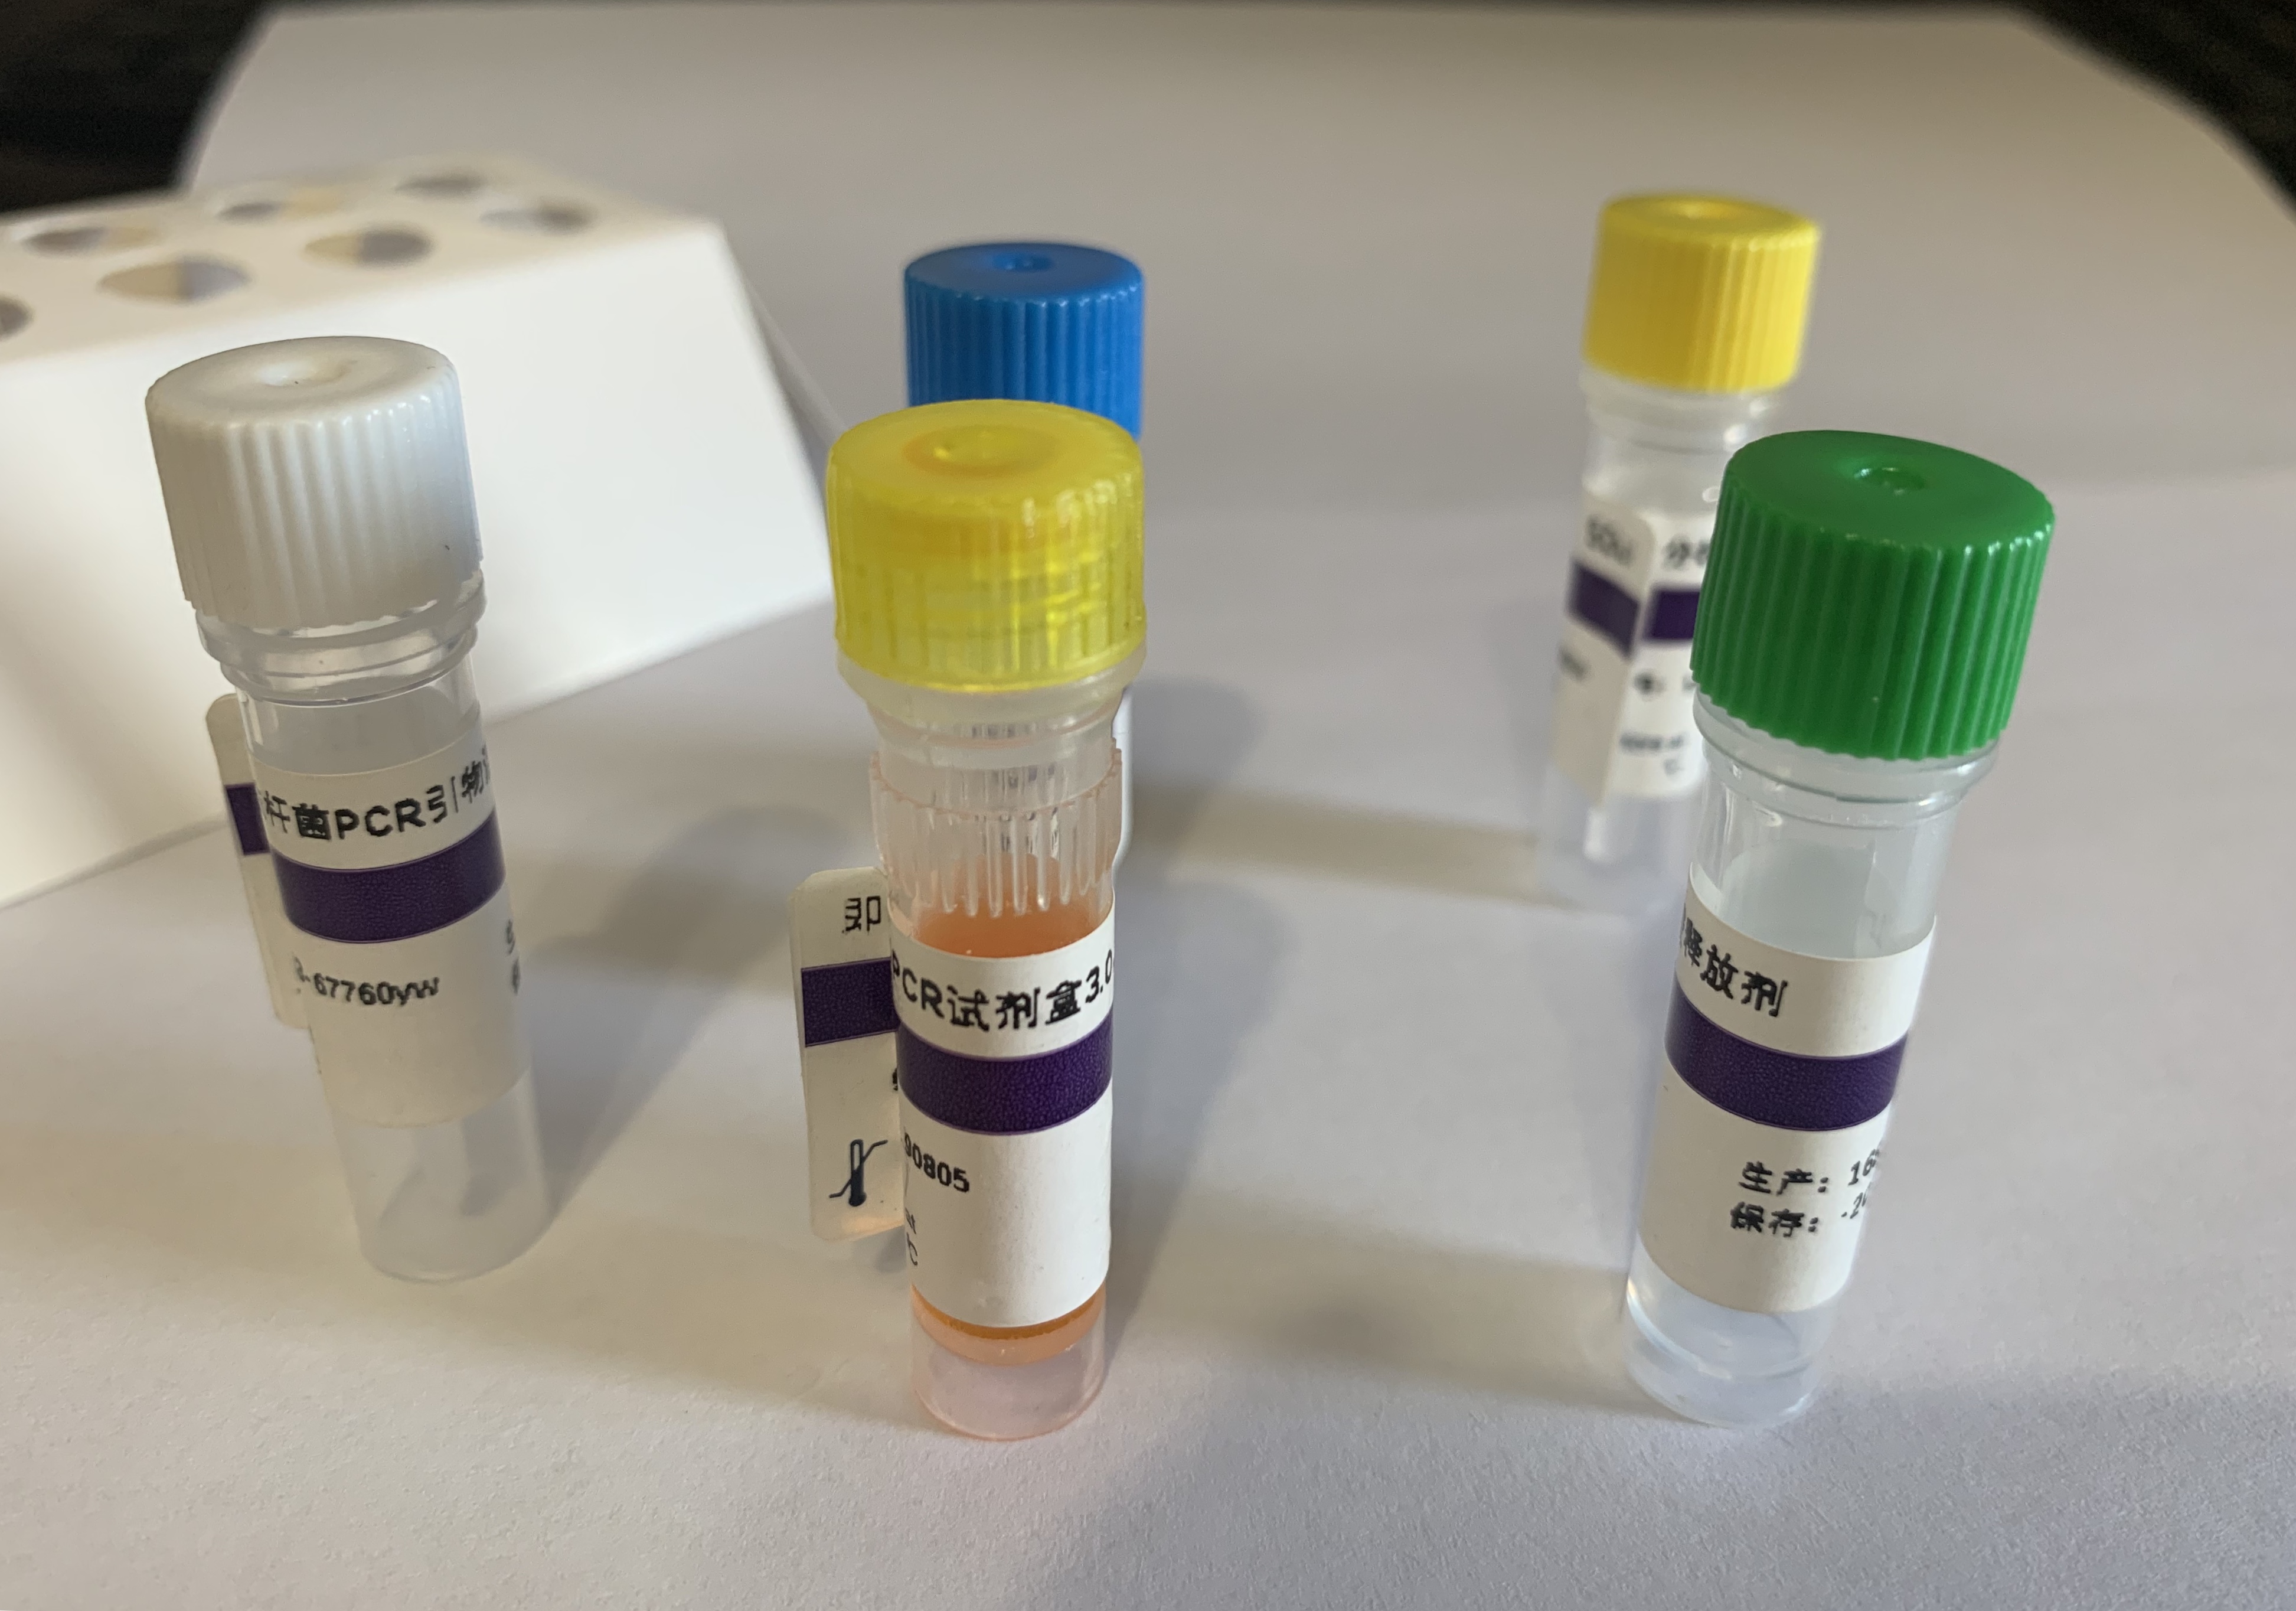 禽网状内皮组织增殖病病毒染料法荧光定量RT-PCR试剂盒